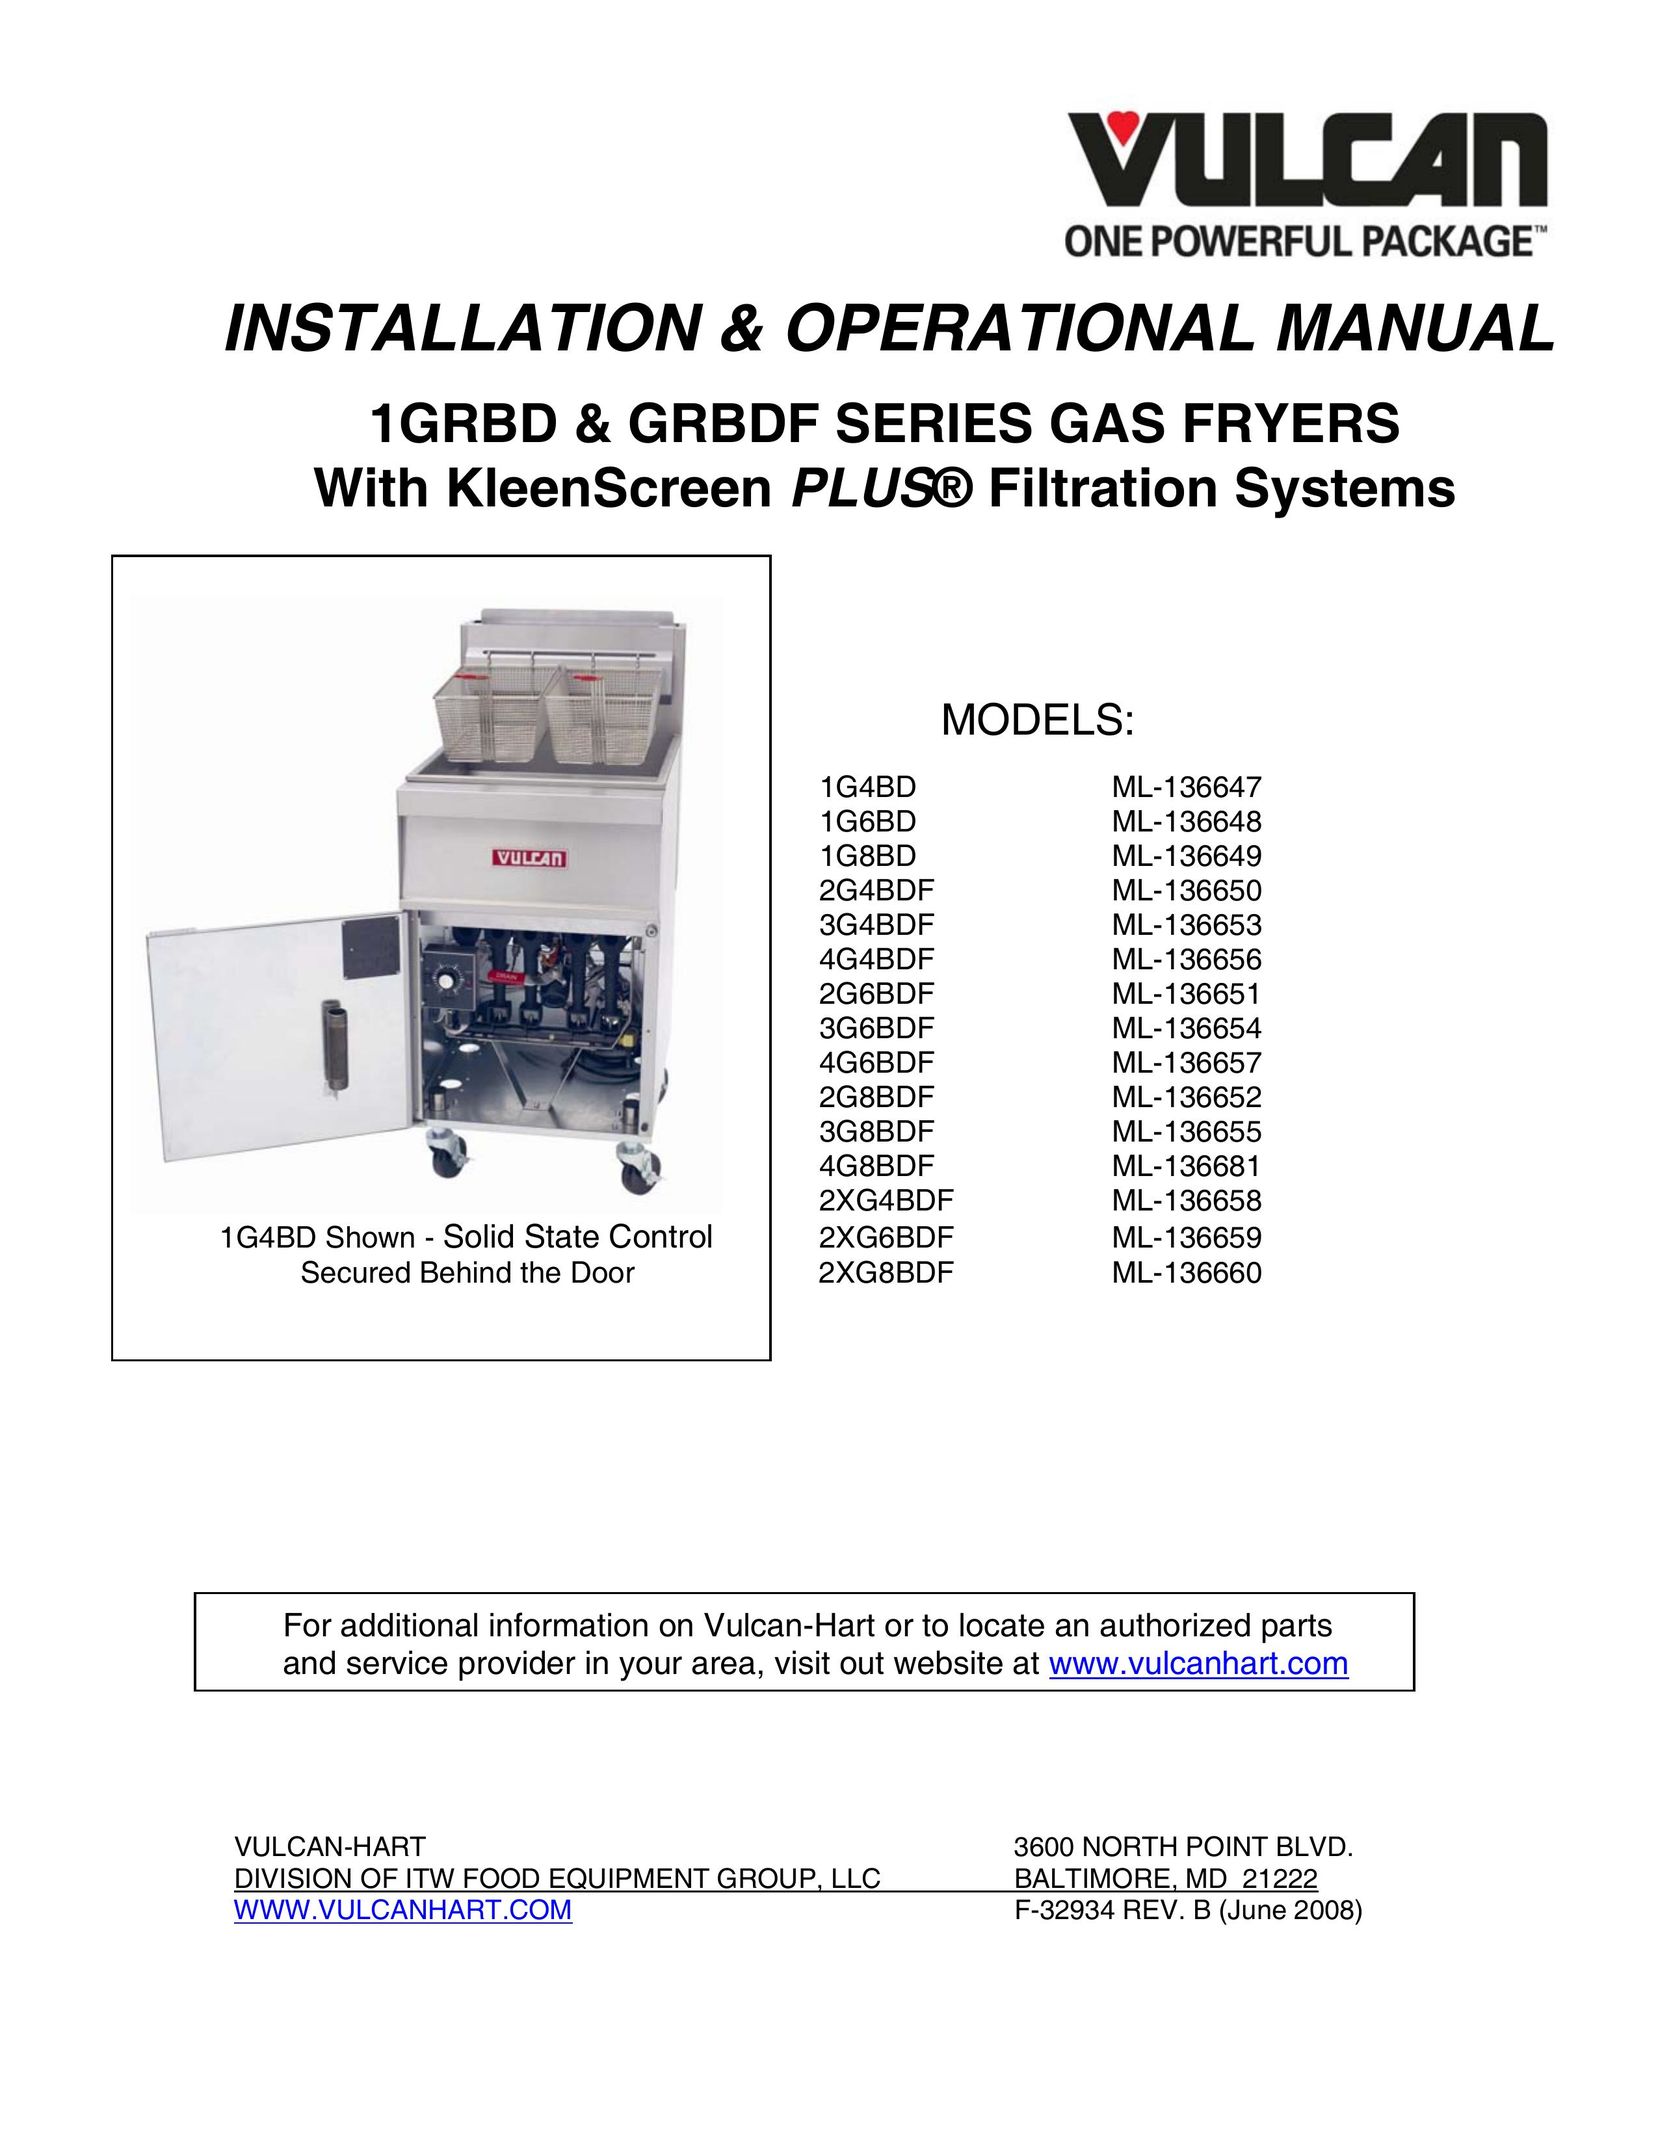 Vulcan-Hart 1G4BD ML-136647 Fryer User Manual